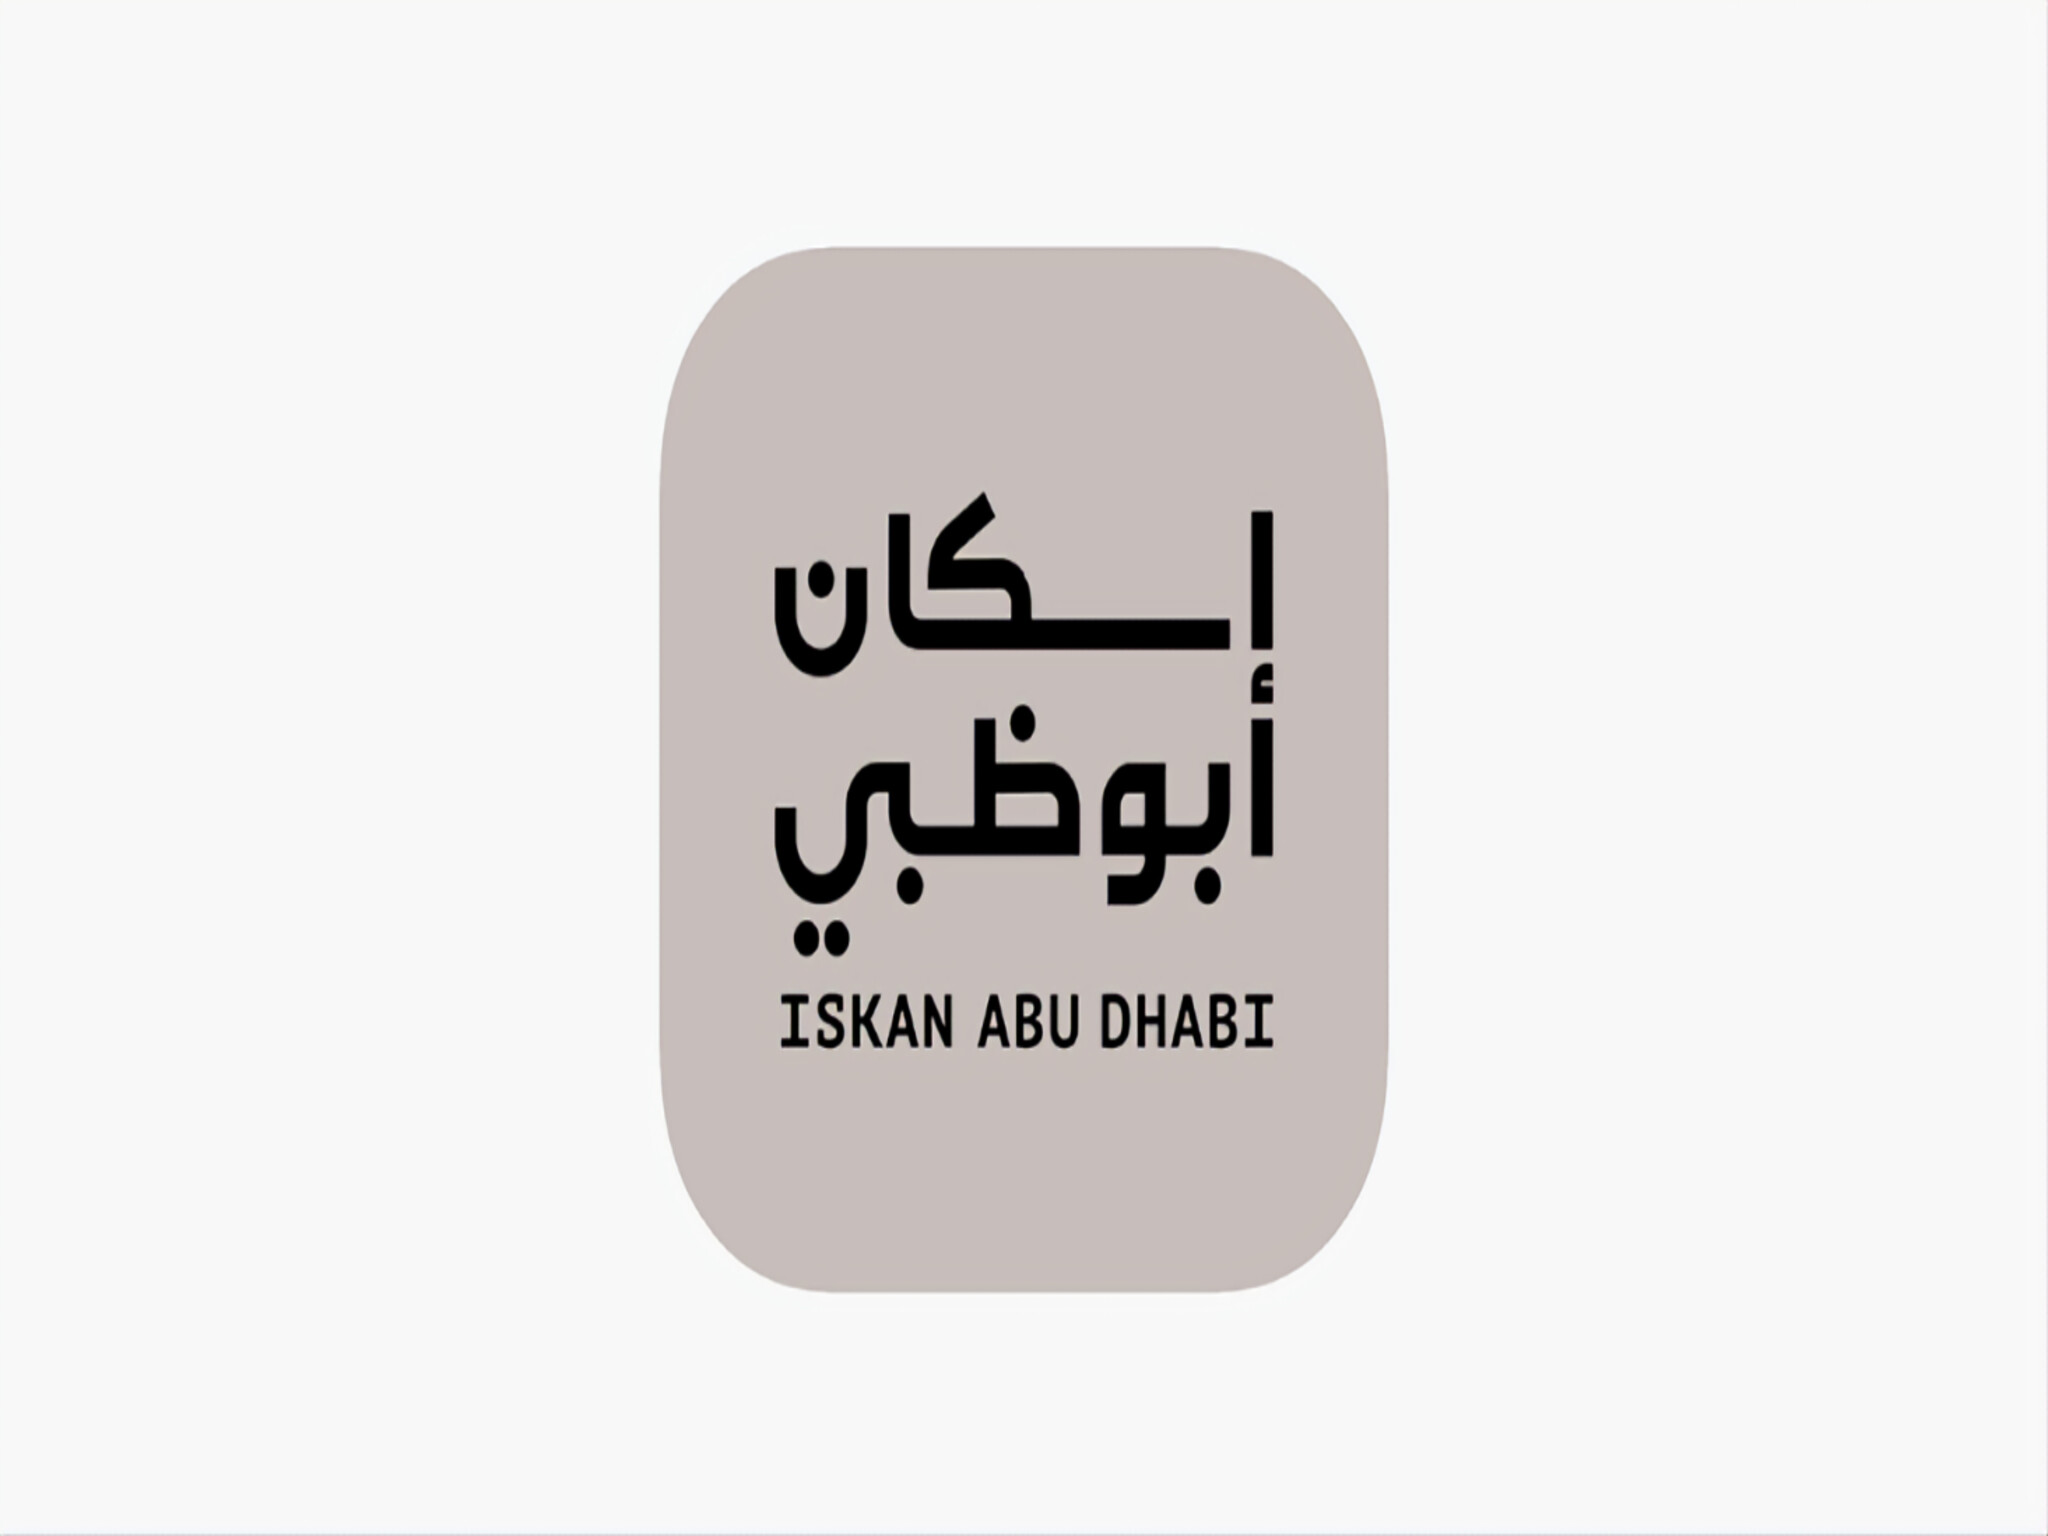 هيئة أبوظبي للأسكان تطلق النسخة المتكاملة من تطبيقها الذكي "Iskan Abu Dhabi"